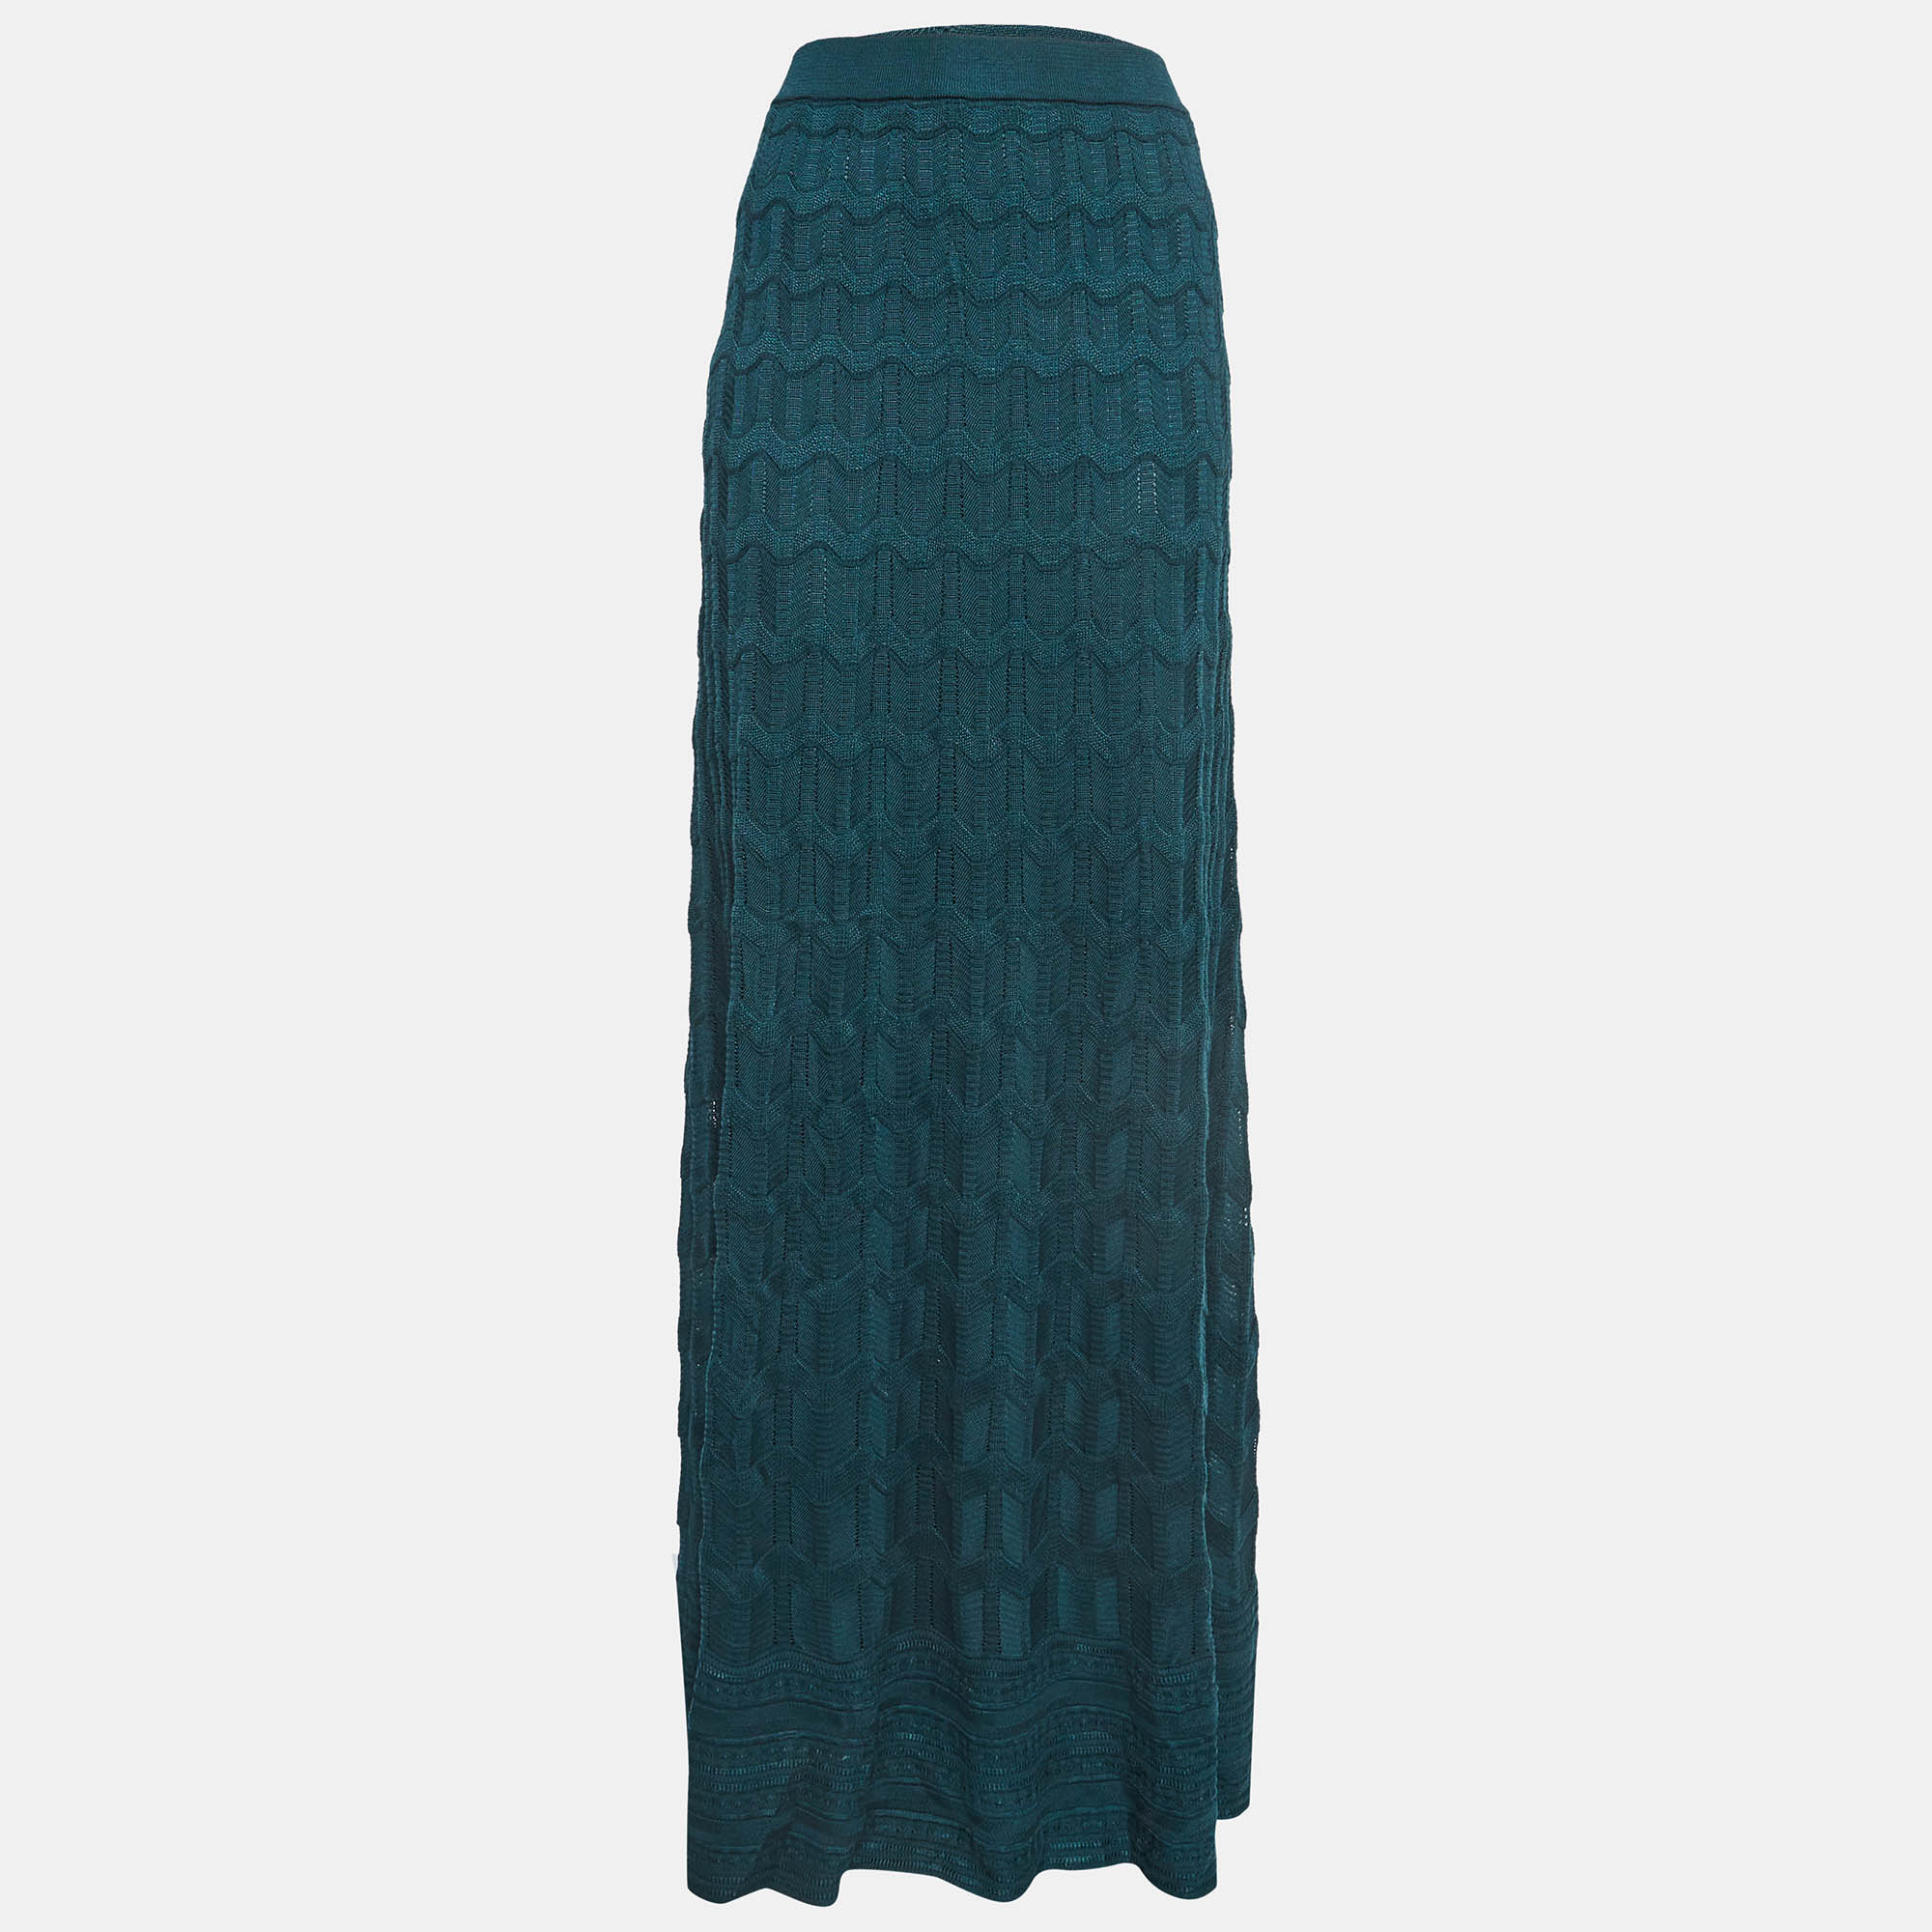 M missoni green patterned knit maxi skirt xl